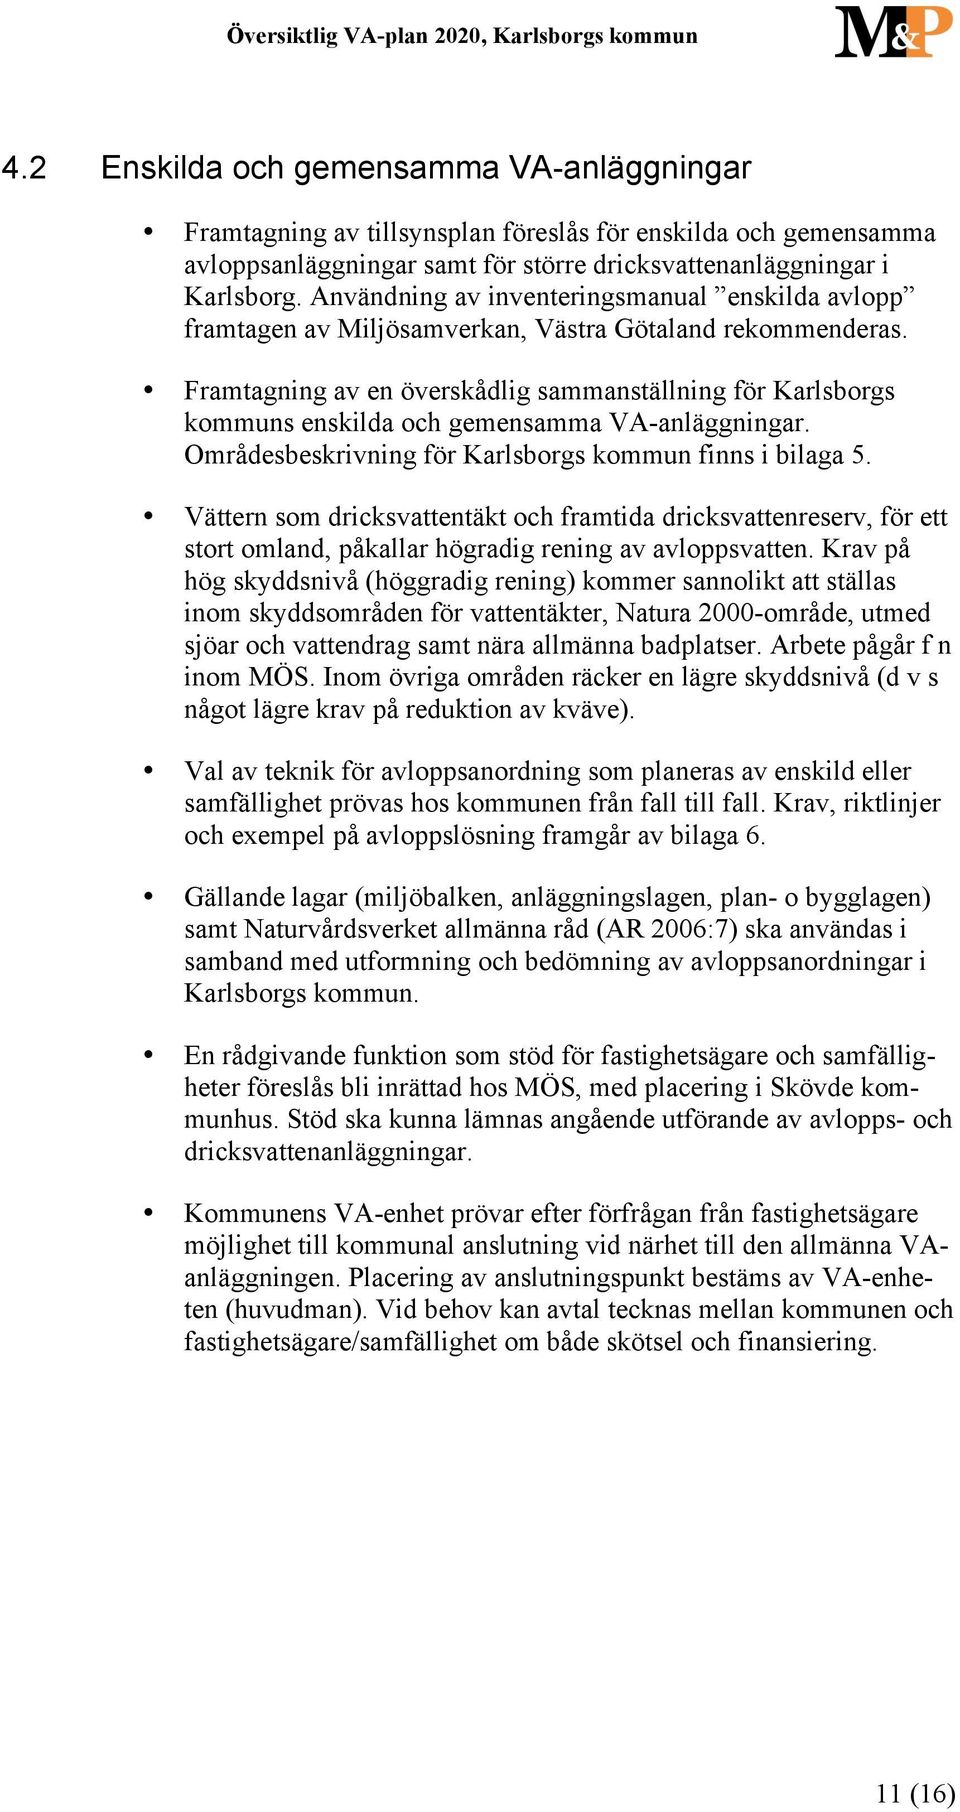 Framtagning av en överskådlig sammanställning för Karlsborgs kommuns enskilda och gemensamma VA-anläggningar. Områdesbeskrivning för Karlsborgs kommun finns i bilaga 5.